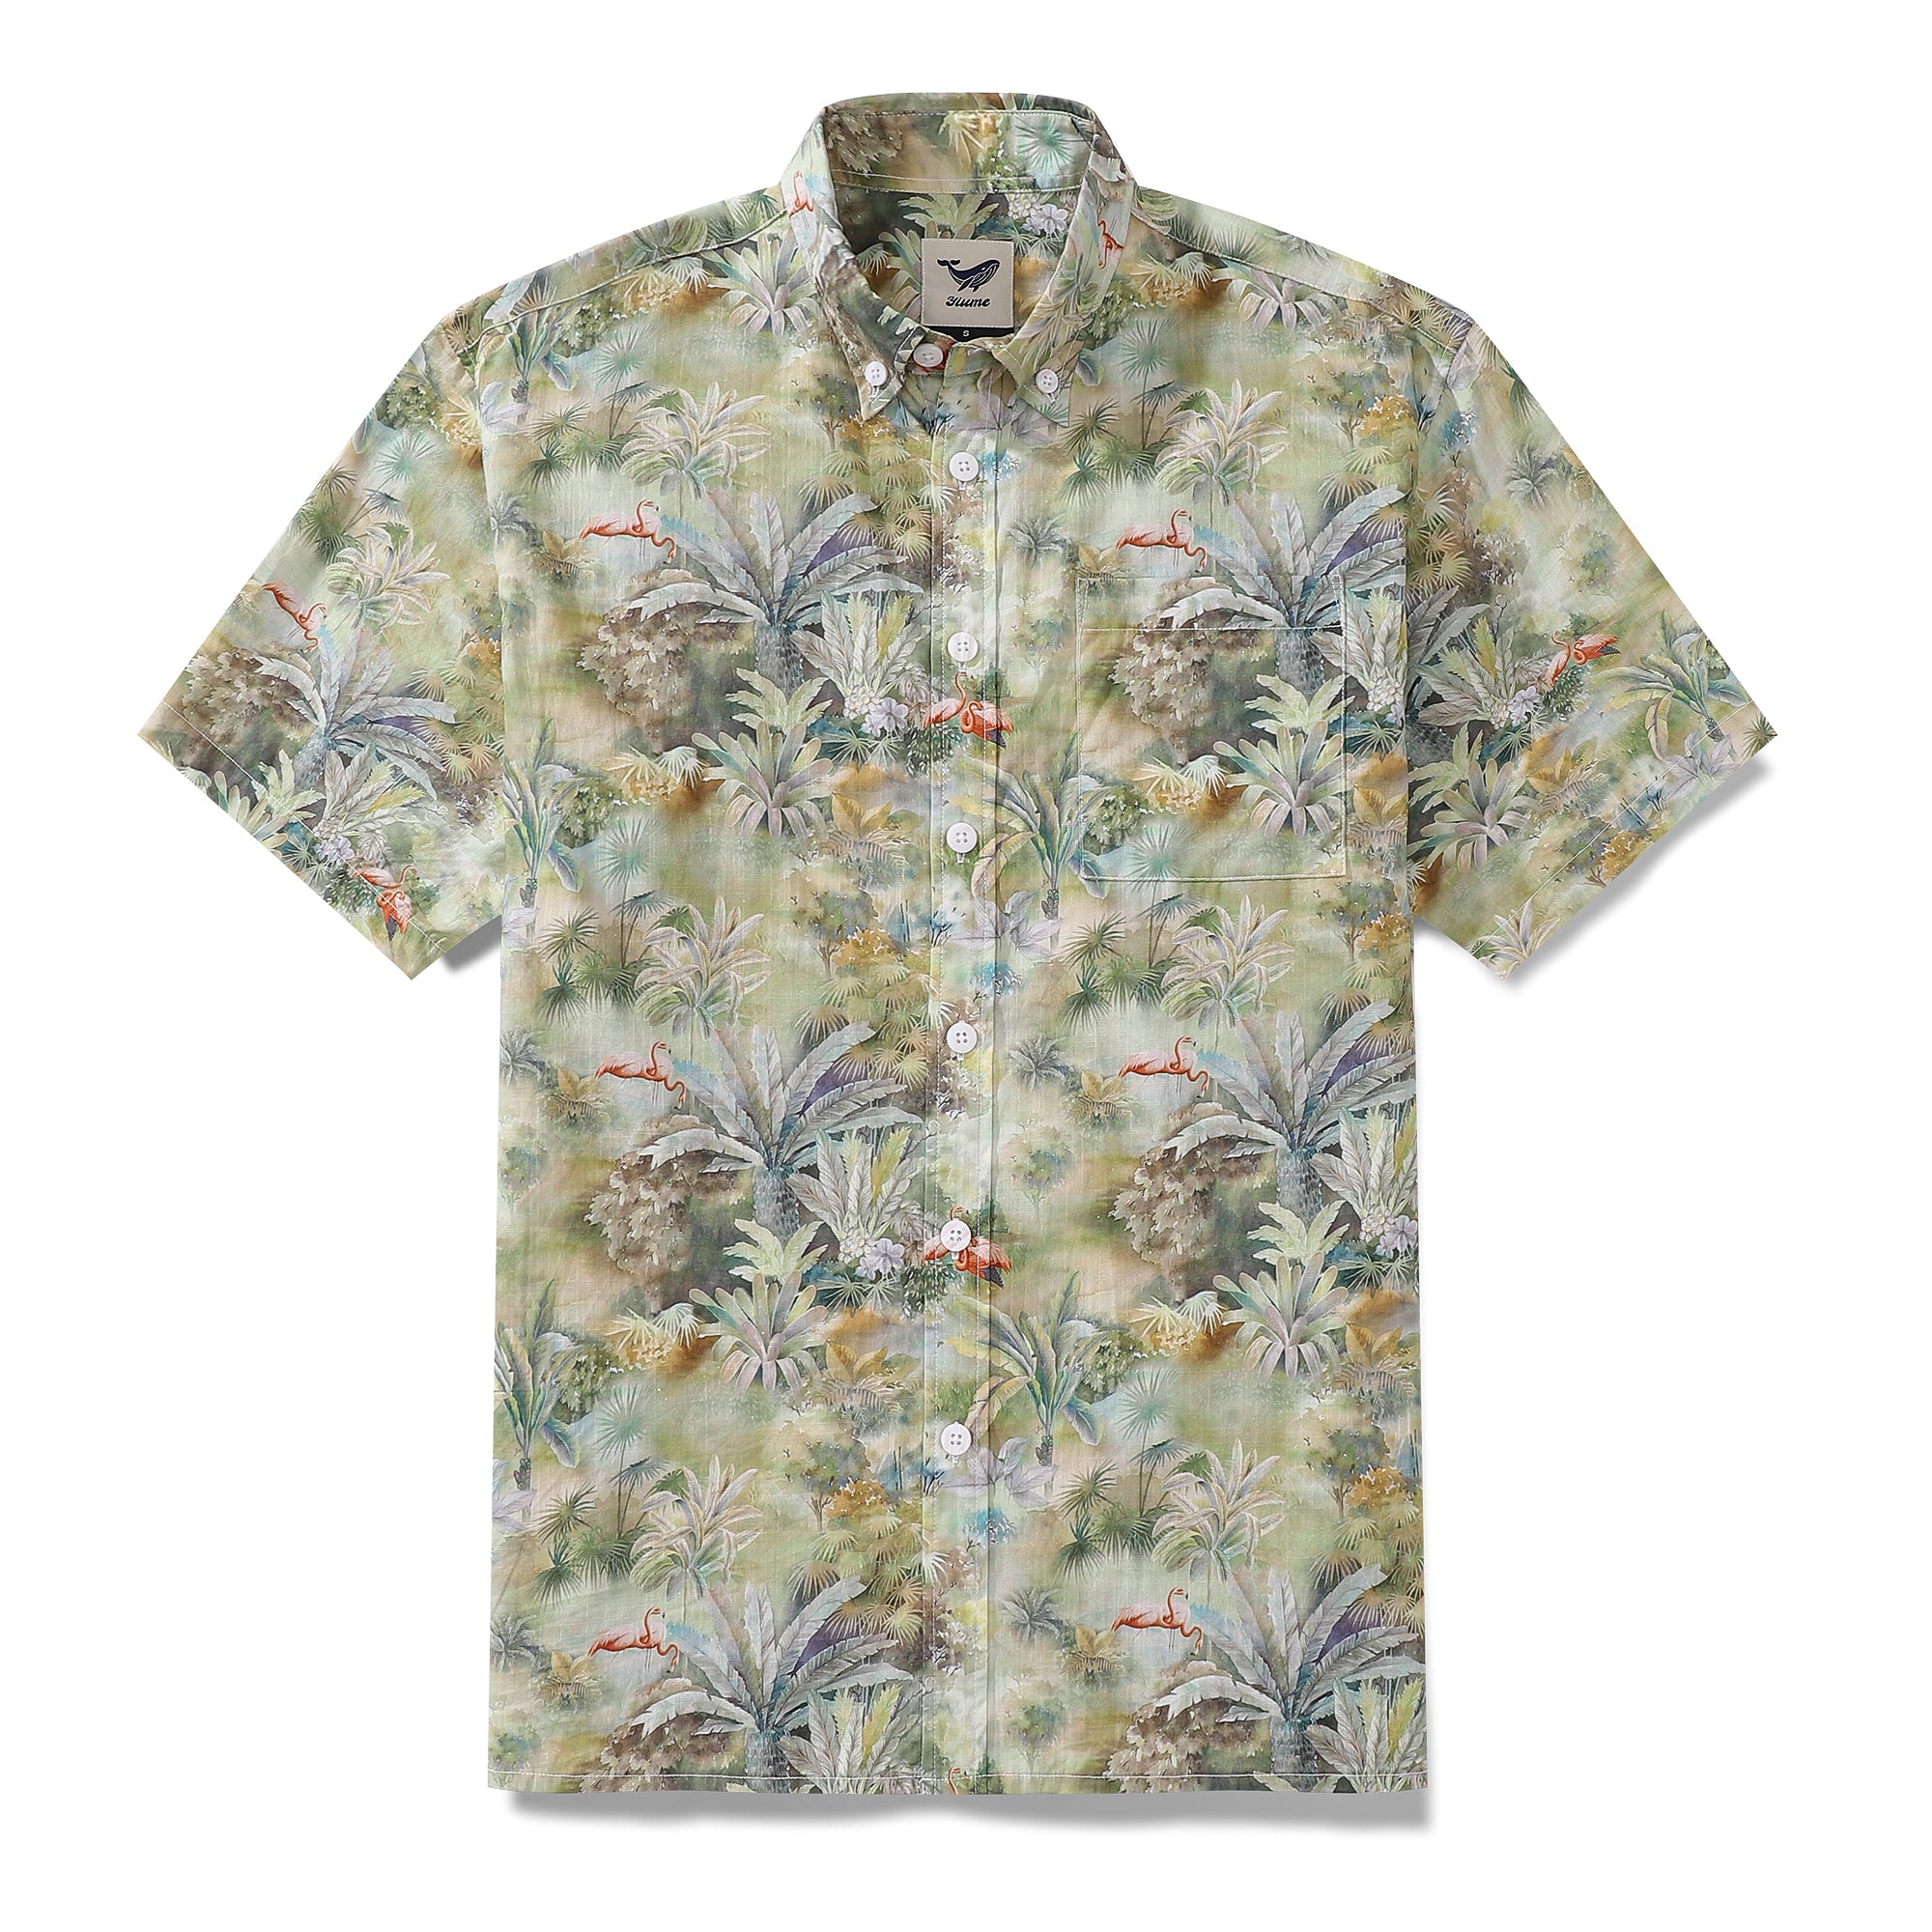 Camisa hawaiana para hombre Camisa Aloha de manga corta con botones de algodón con estampado de encanto exótico